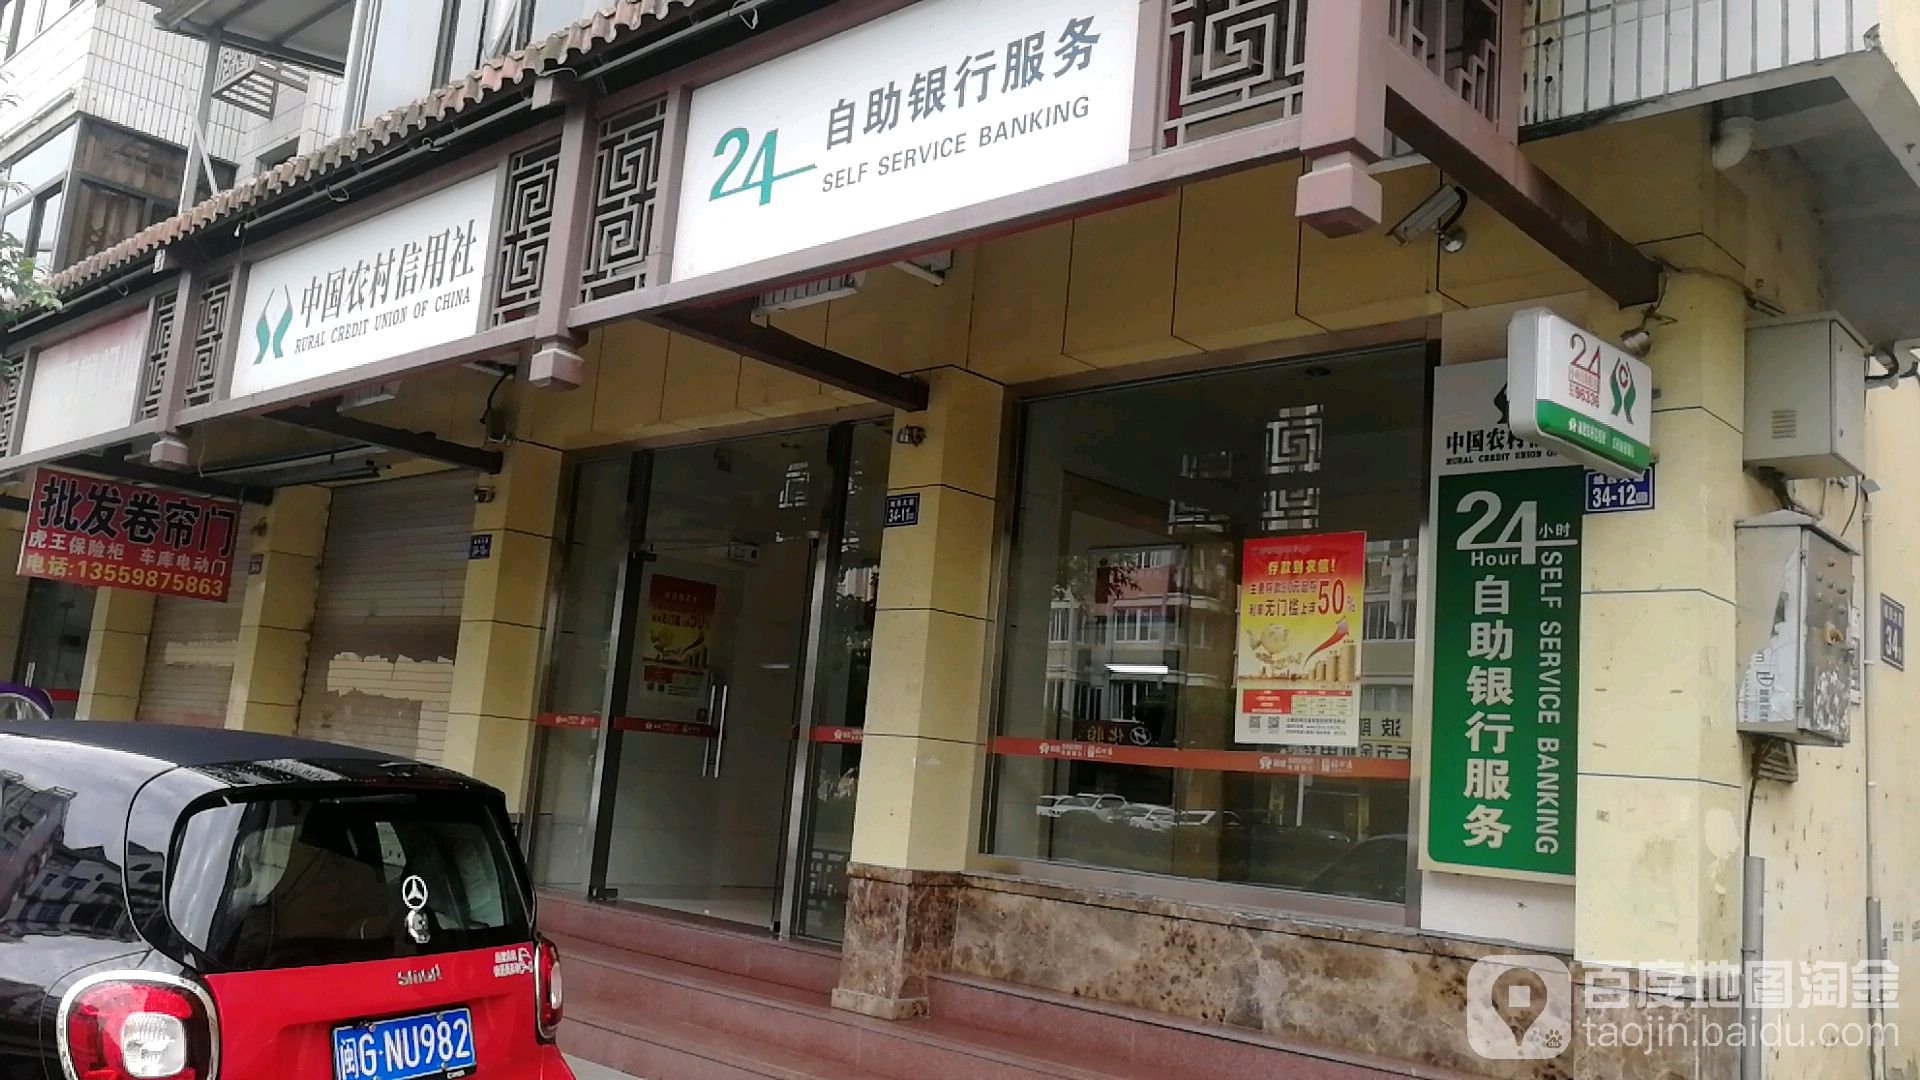 中國農村信用社24小時自助銀行服務(安洲路)